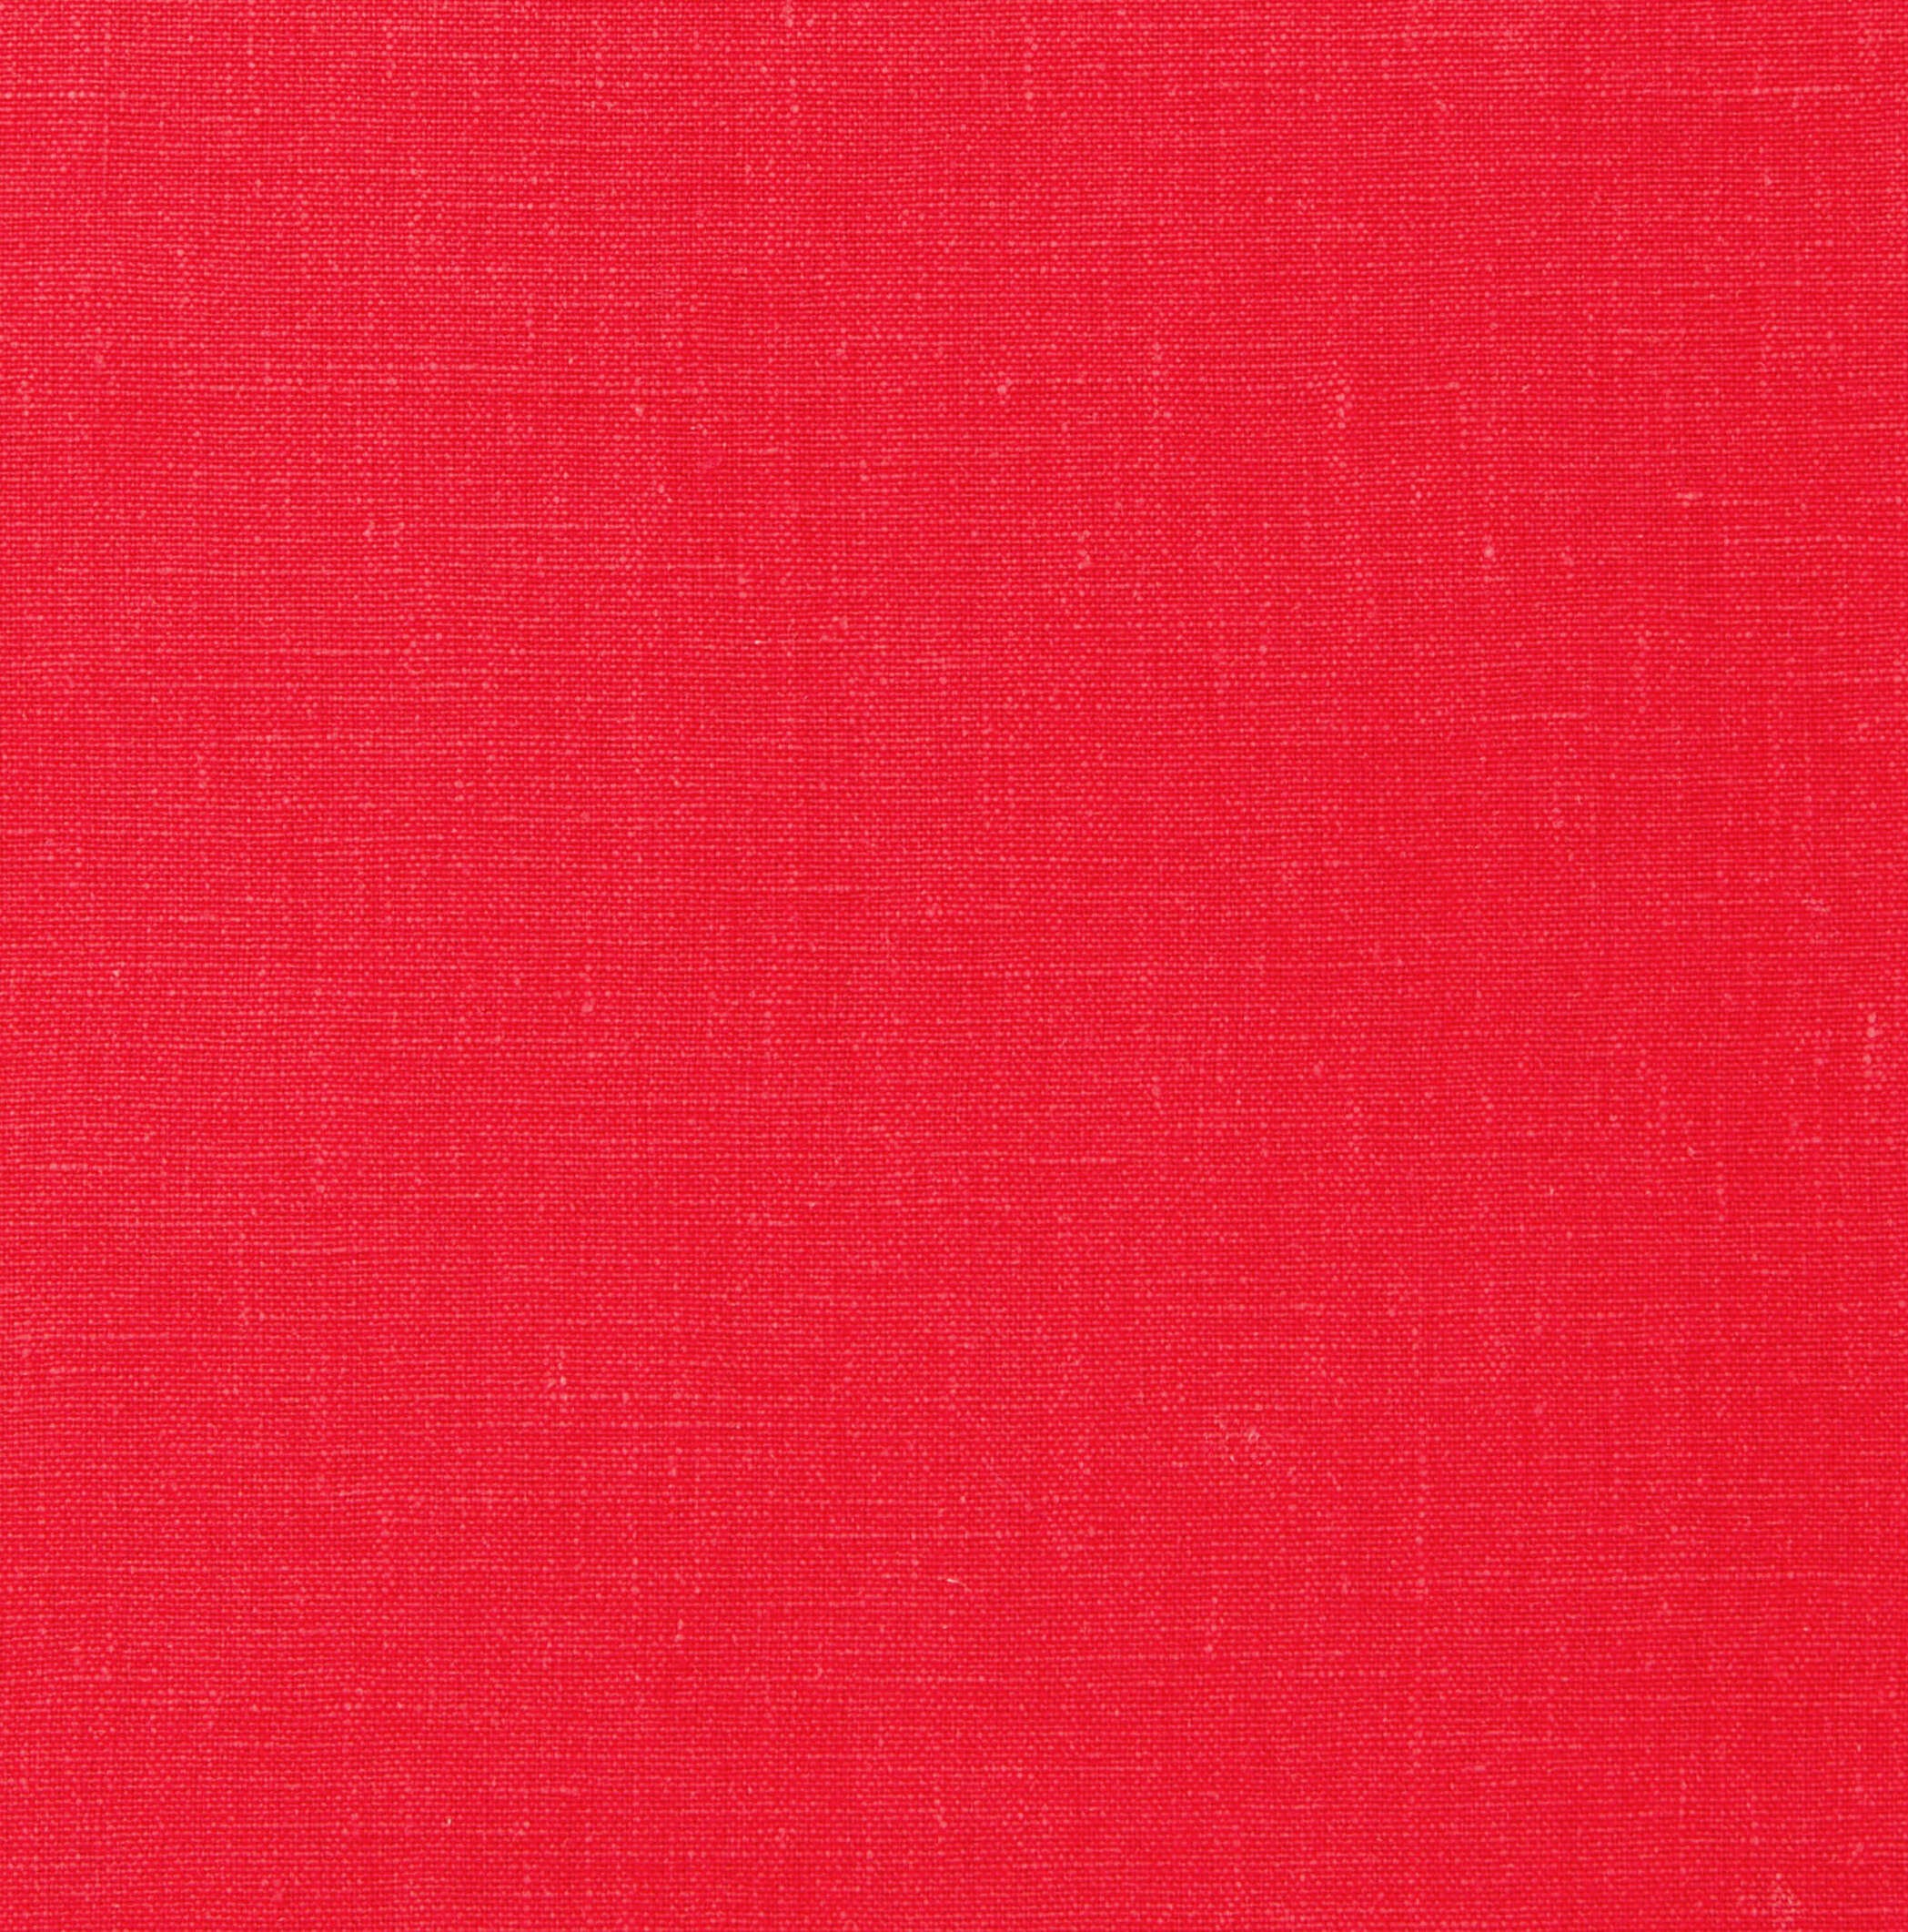 Pré-visualização da personalização do produto Mission Bolinha Linho Vermelho | Dotted Mission Notebook - Red Linen.